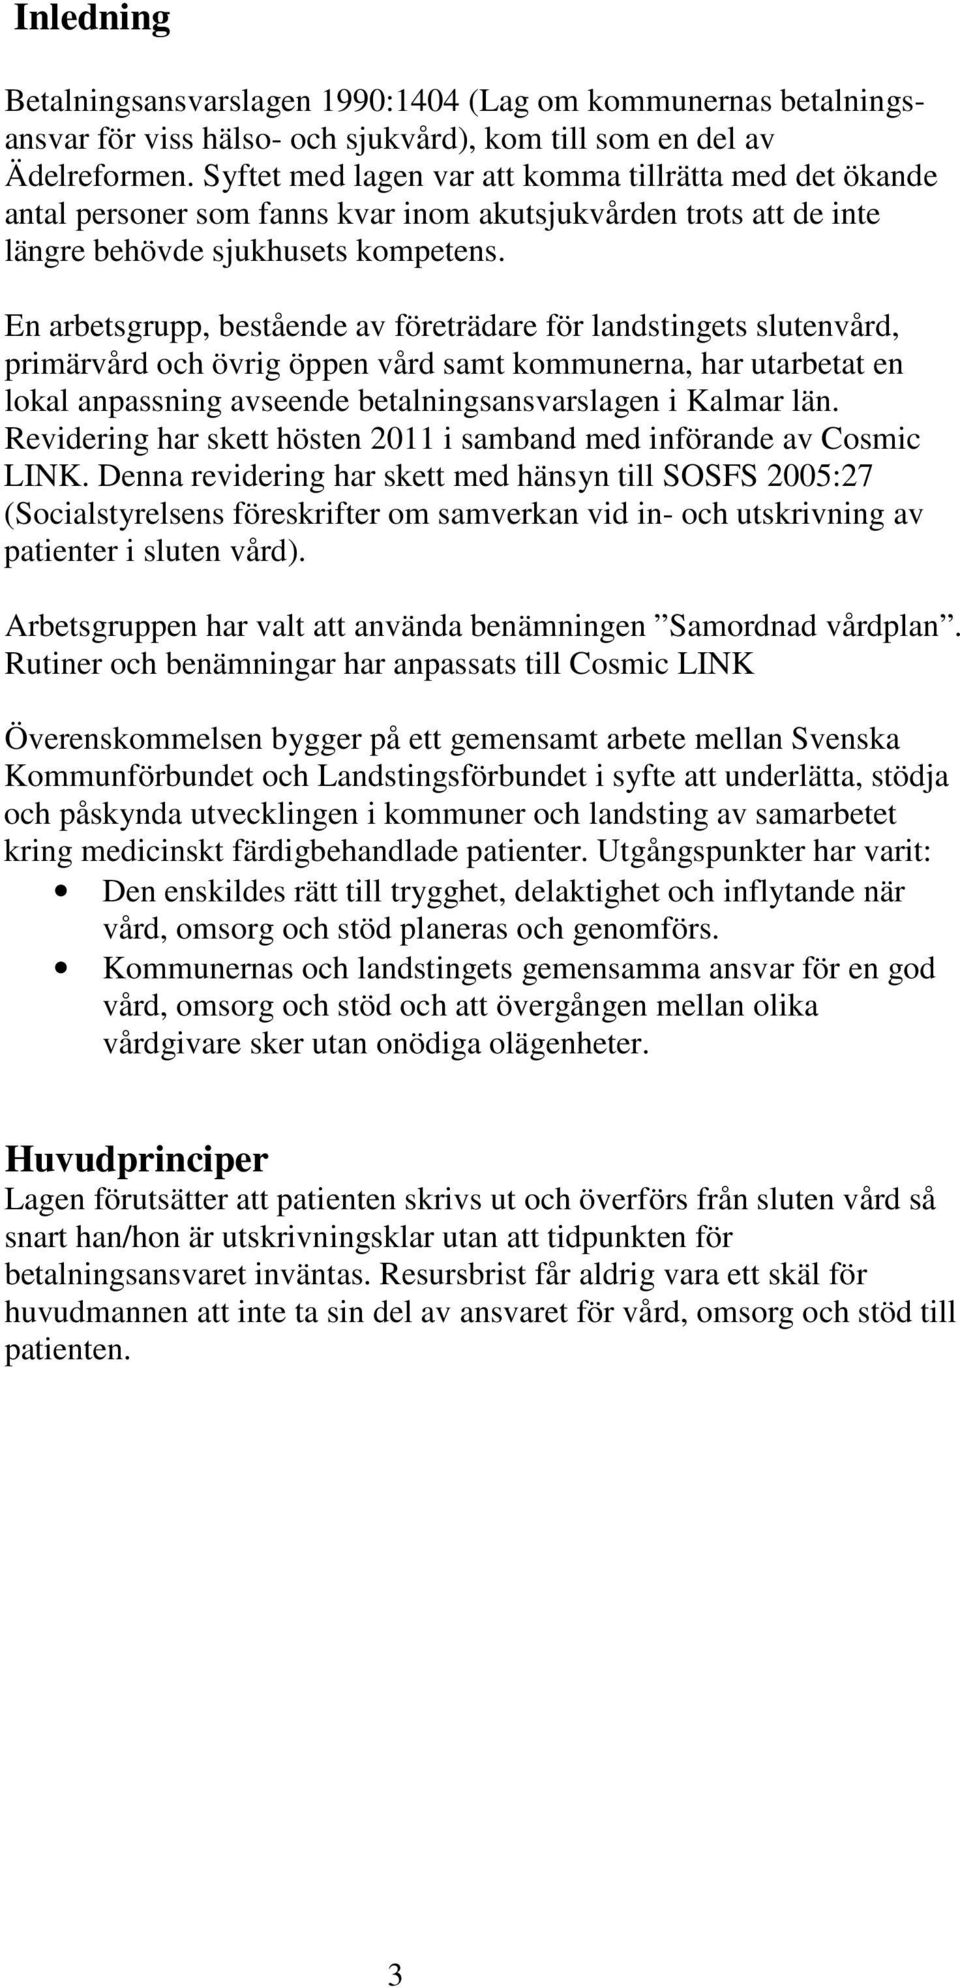 En arbetsgrupp, bestående av företrädare för landstingets slutenvård, primärvård och övrig öppen vård samt kommunerna, har utarbetat en lokal anpassning avseende betalningsansvarslagen i Kalmar län.